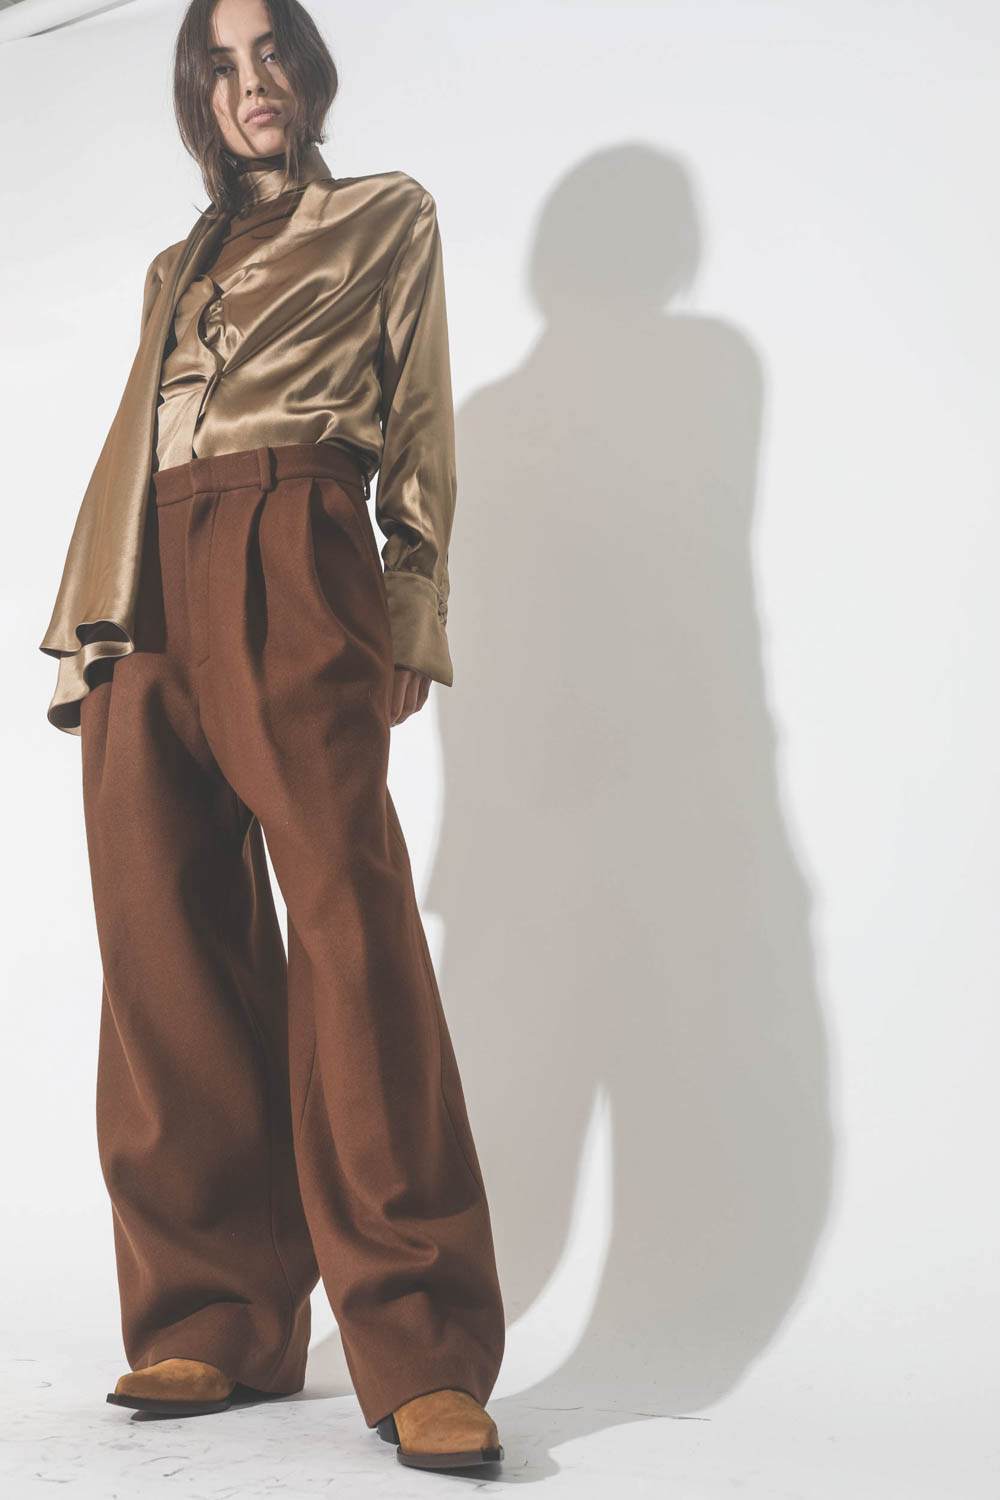 Pantalon large à pinces en drap de laine marron Vautrait. Porté avec des boots santiags camel.